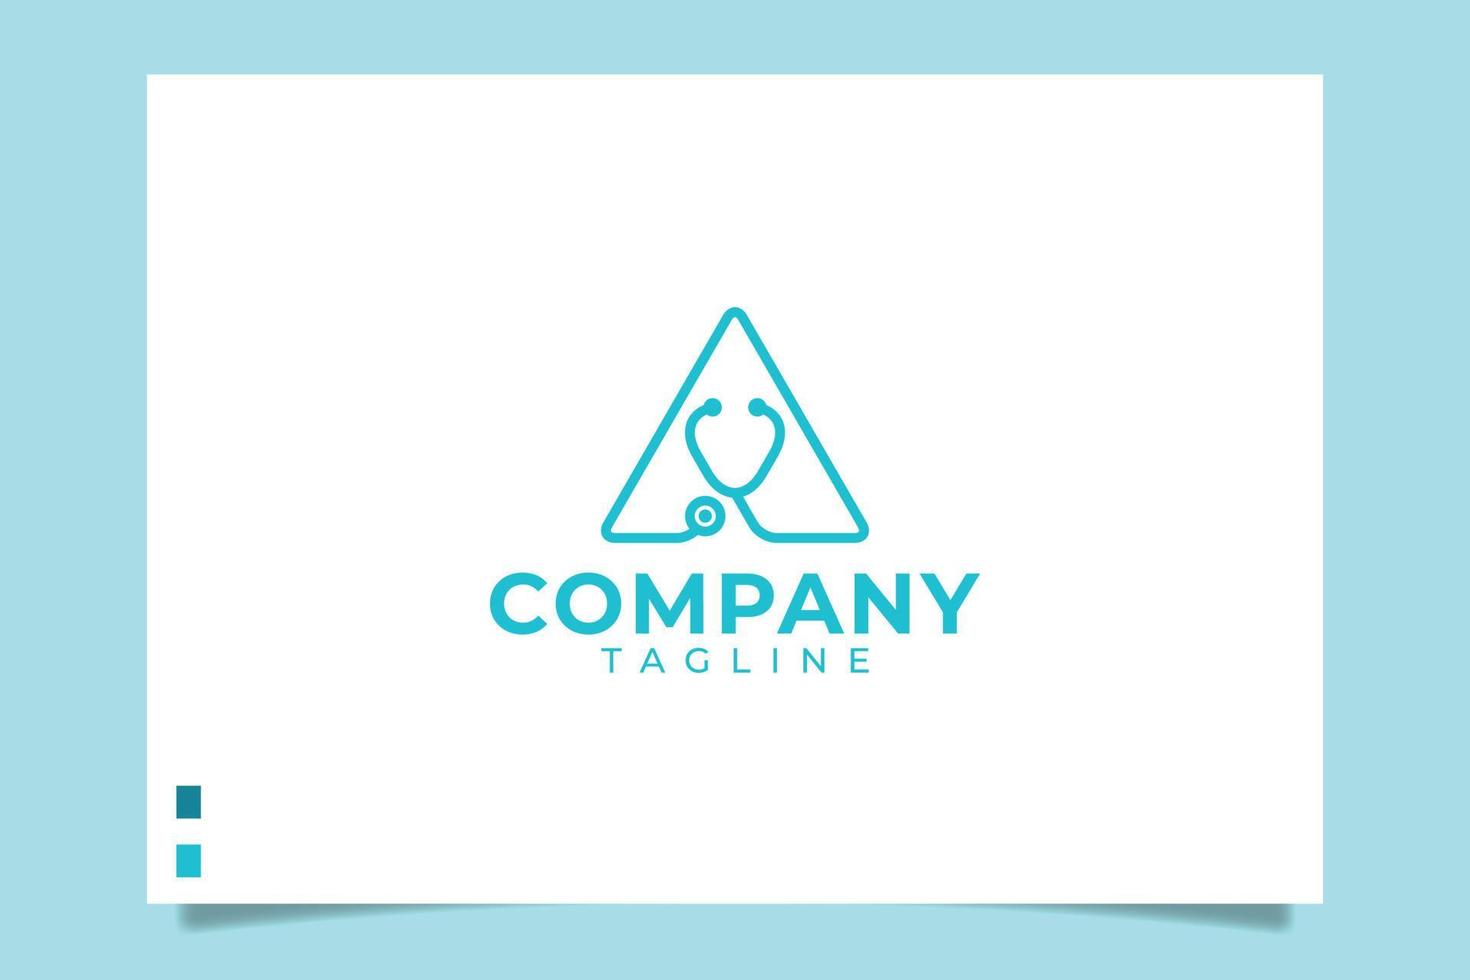 skriv en medicinsk logotyp för alla företag, speciellt för medicinsk och hälsovård, apotek, sjukhus, klinik, etc. vektor